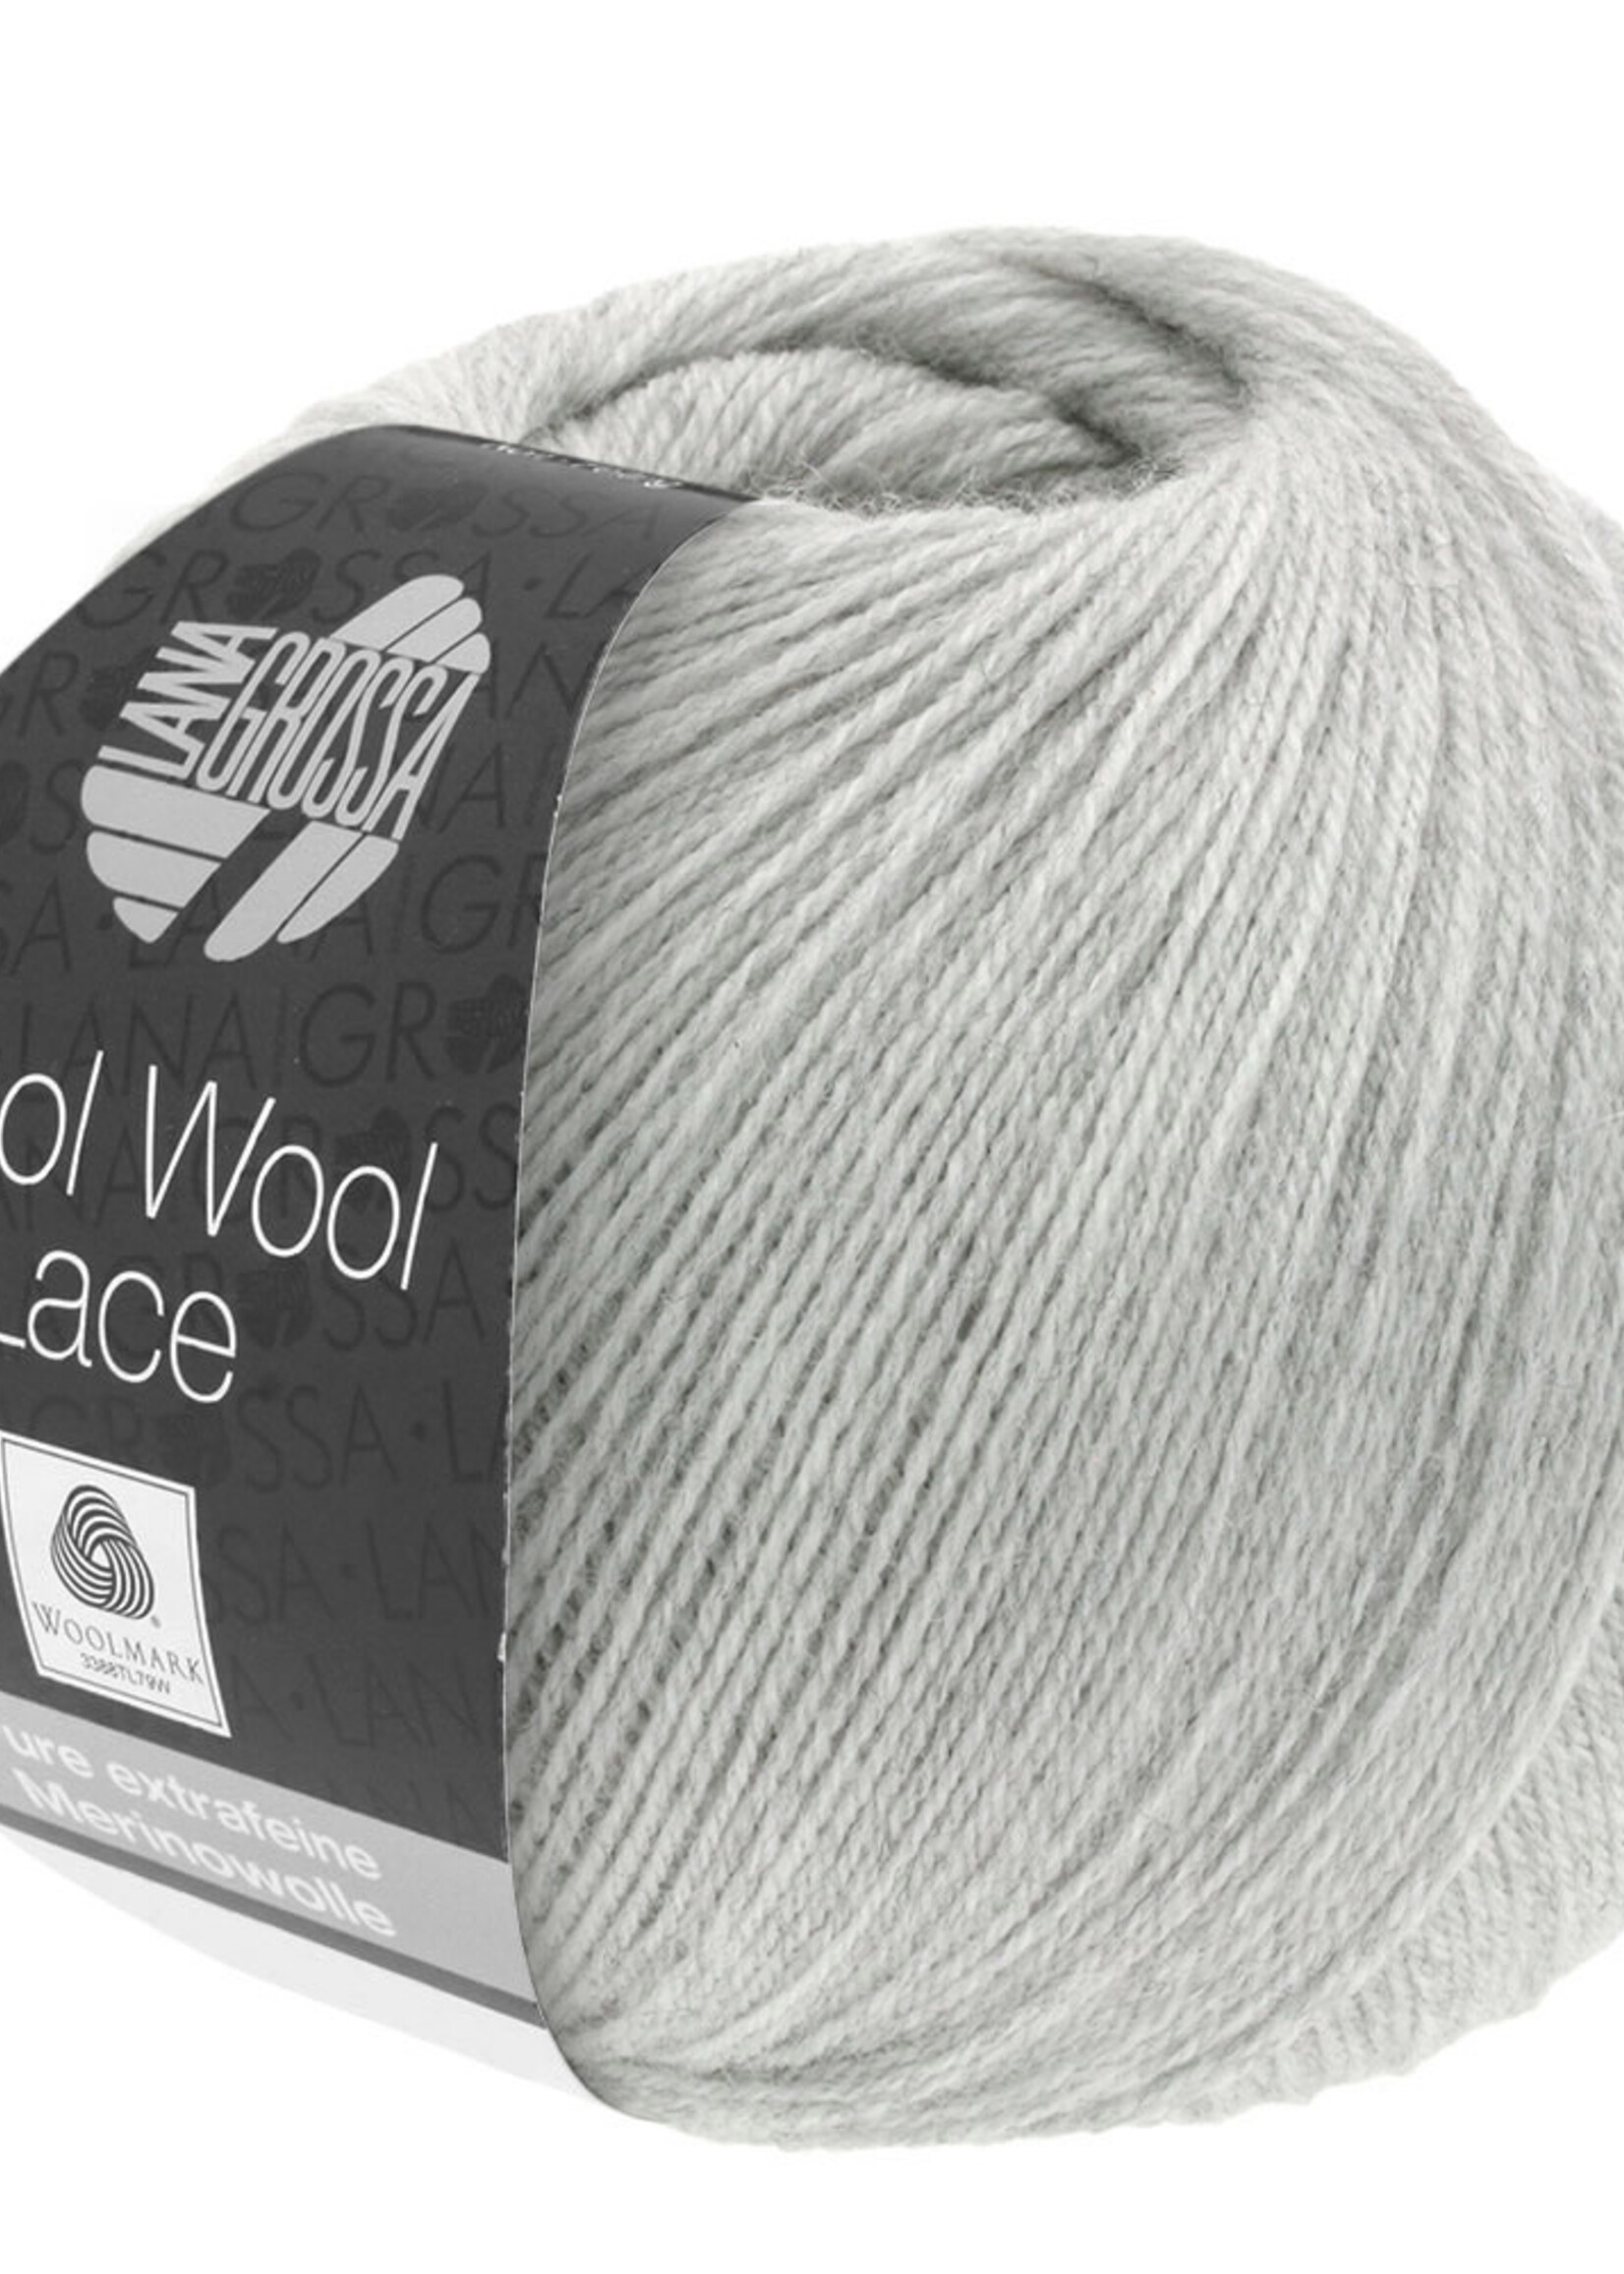 Lana Grossa Cool Wool Lace - Lana Grossa 027-licht grijs